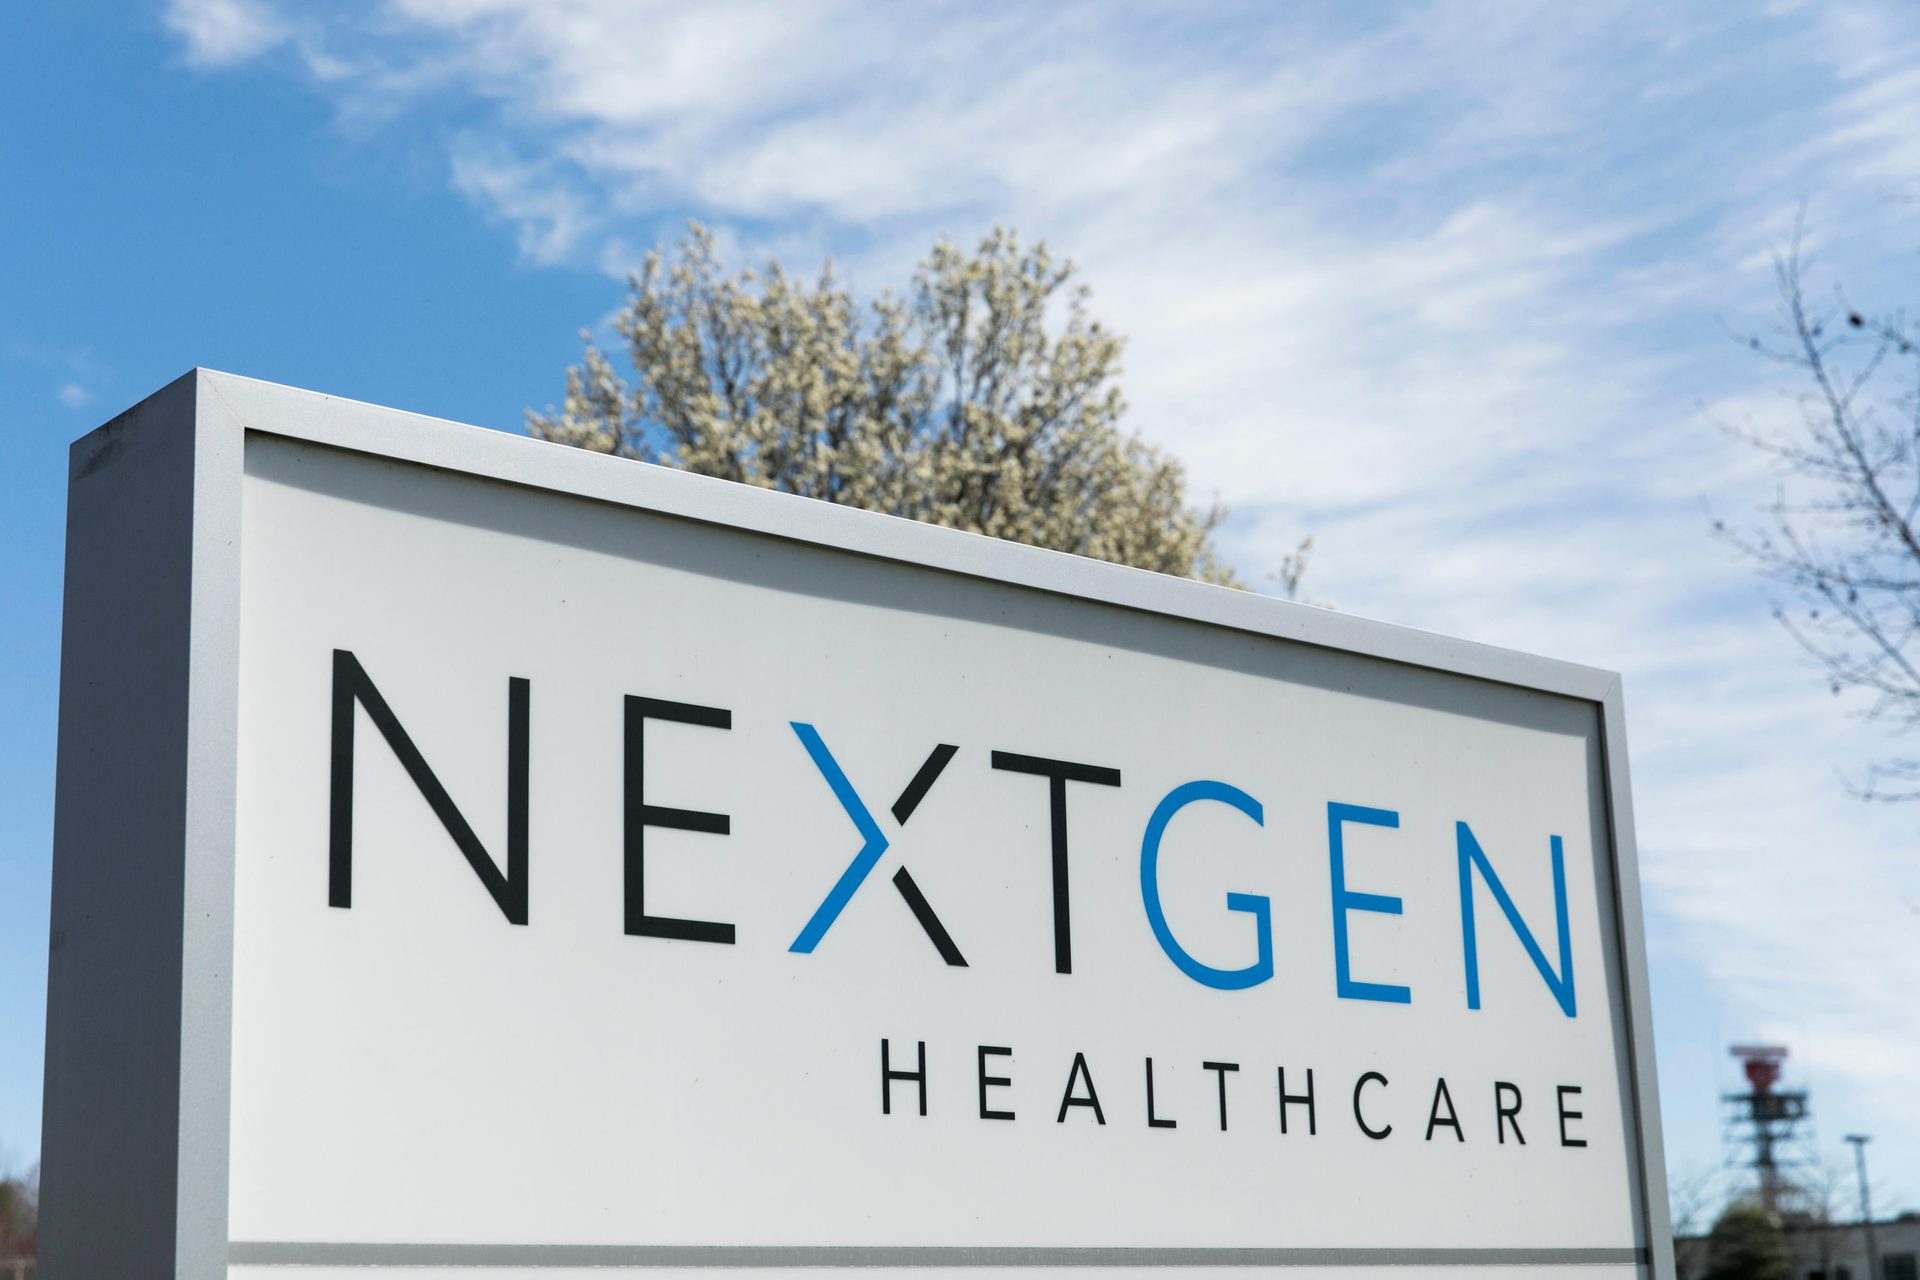 Nextgen Healthcare data breach affected more than 1 million patients